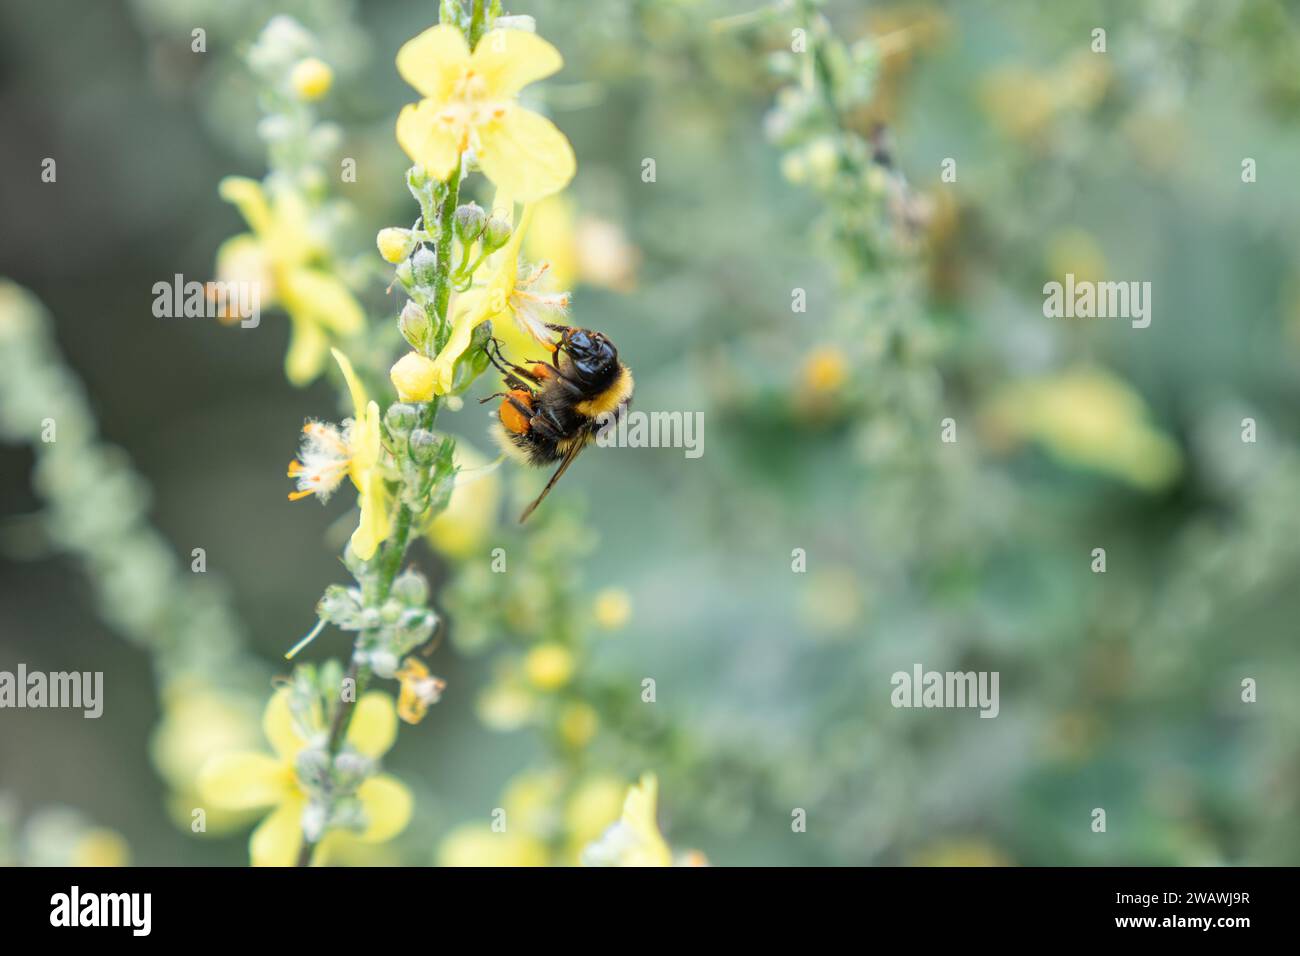 Atterraggio di Bumble-bee per raccogliere più polline dal fiore giallo della pianta di mulleina con sacco di polline completo in nuova Zelanda. Foto Stock